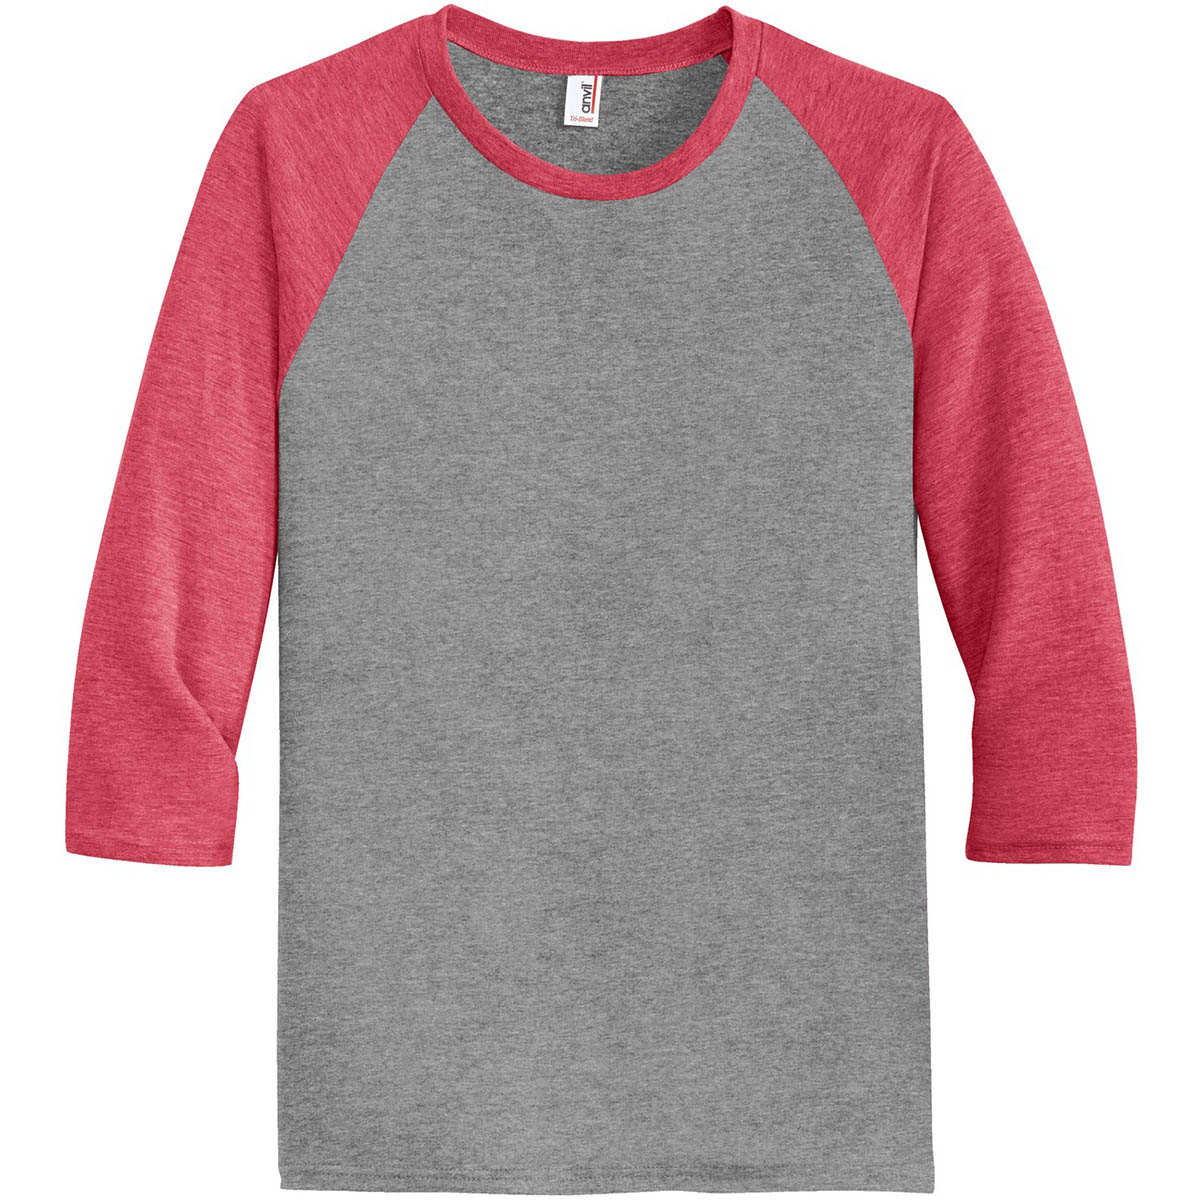 red and gray raglan shirt